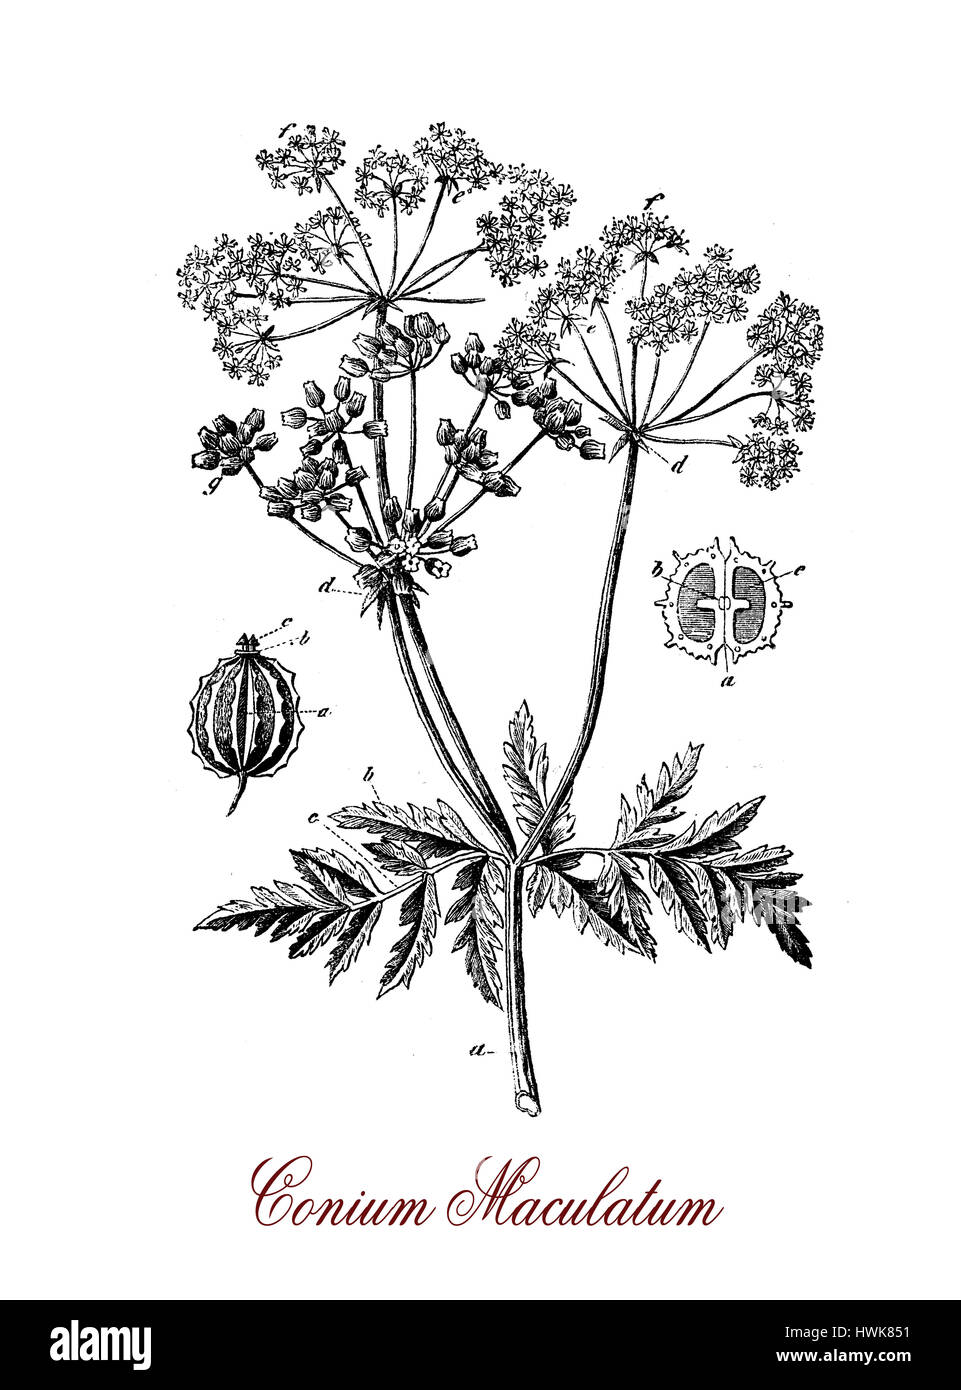 Gravure de vintage de pruches, d'un poison plante herbacée avec de petites fleurs en grappes blanches, ses toxines coniine est similaire au curare Banque D'Images